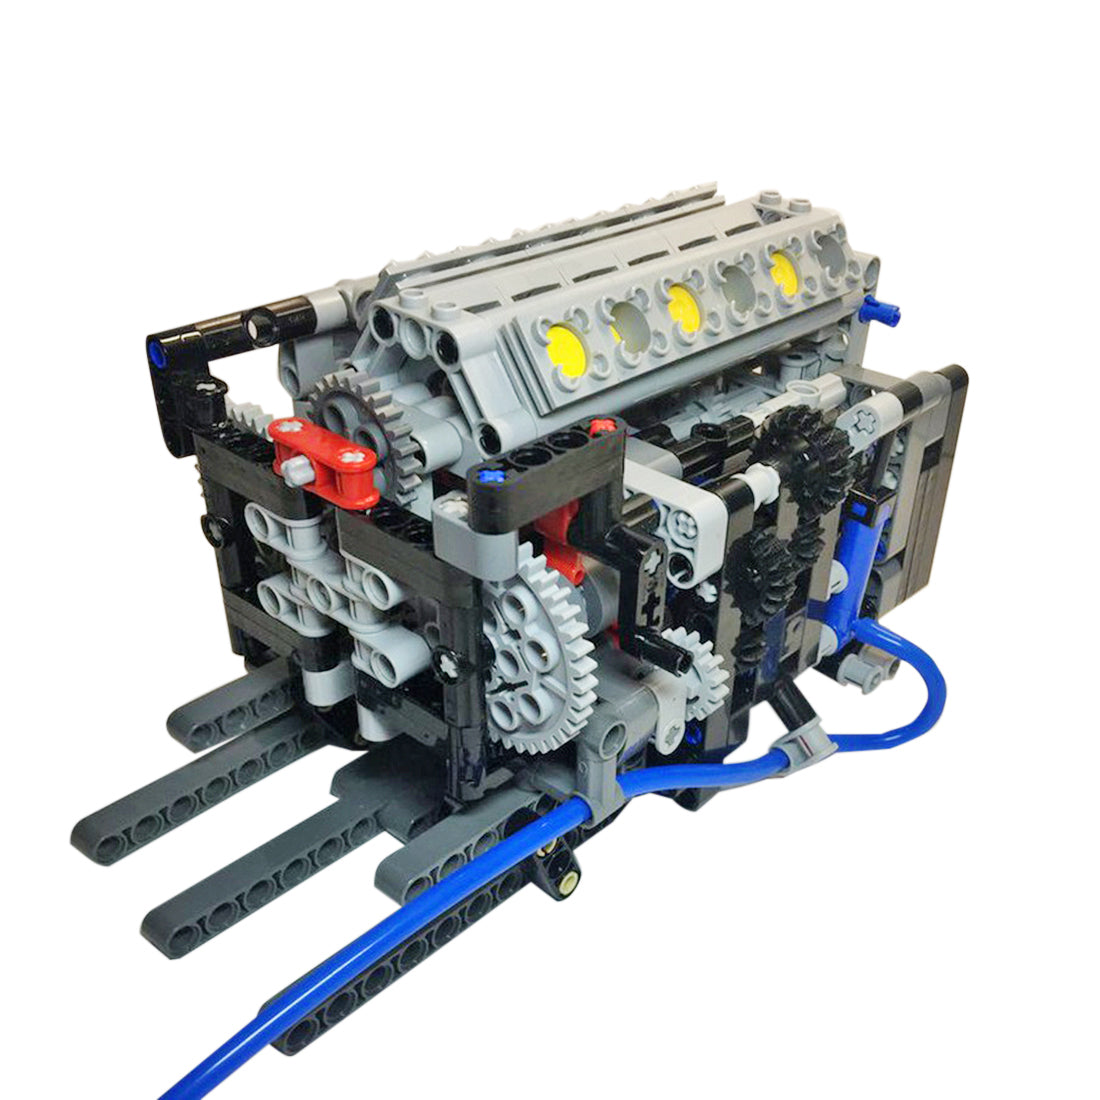 build your own v12 engine model